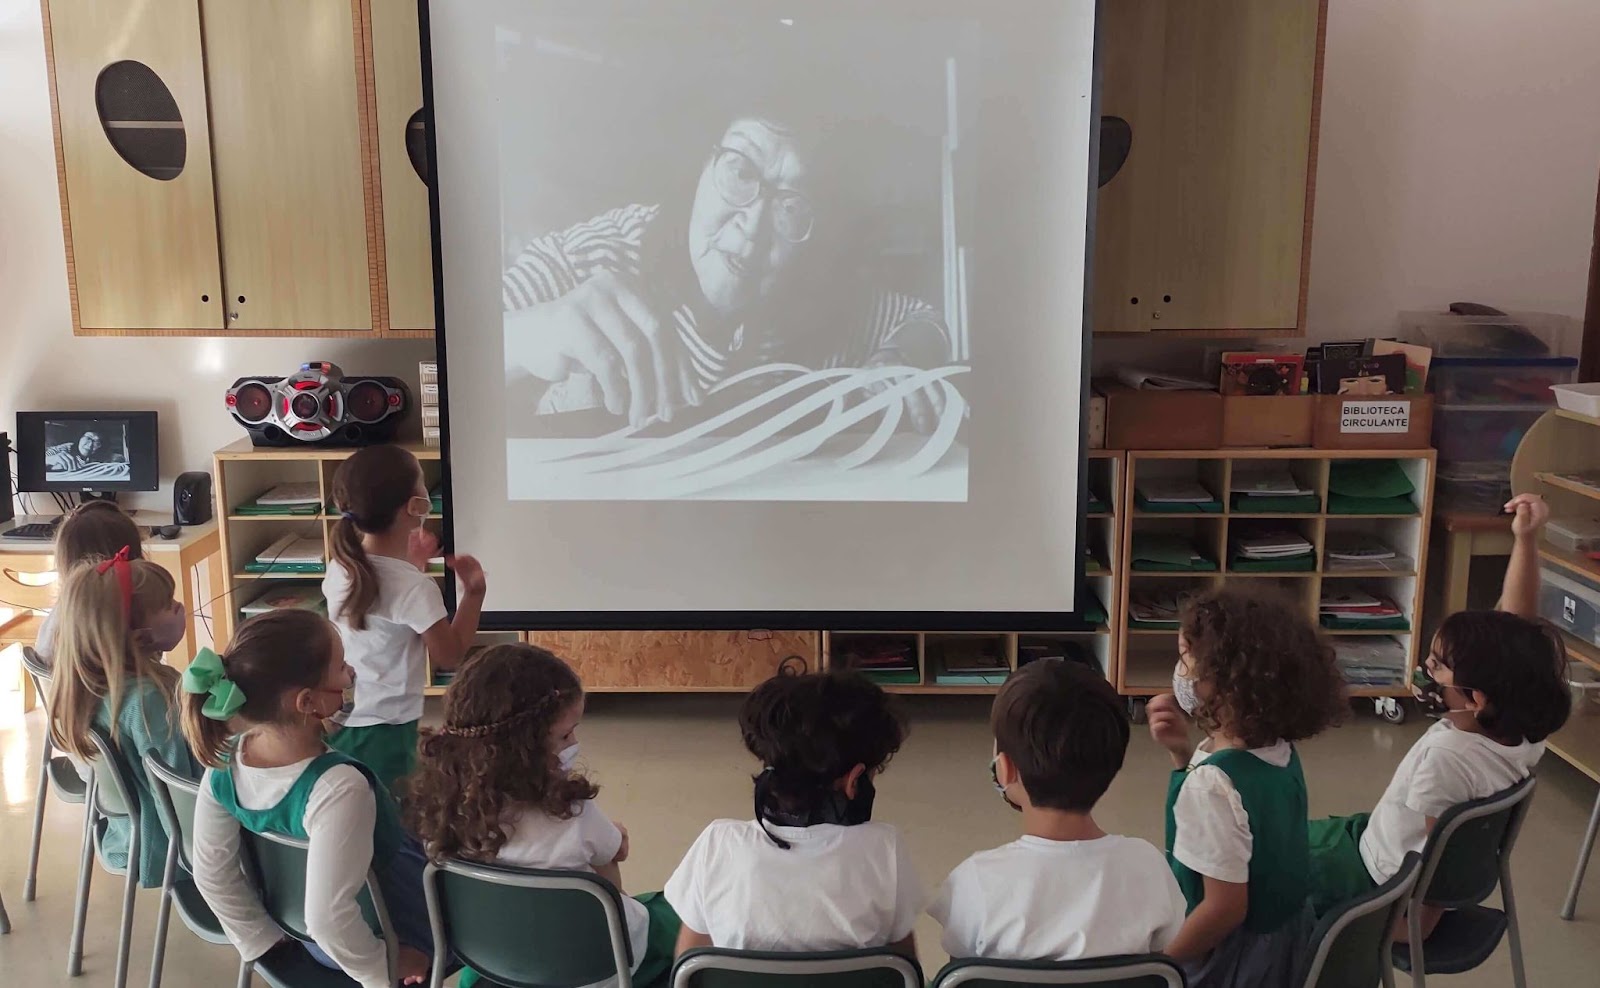 A imagem mostra uma roda de crianças assistindo a uma transmissão em um telão.